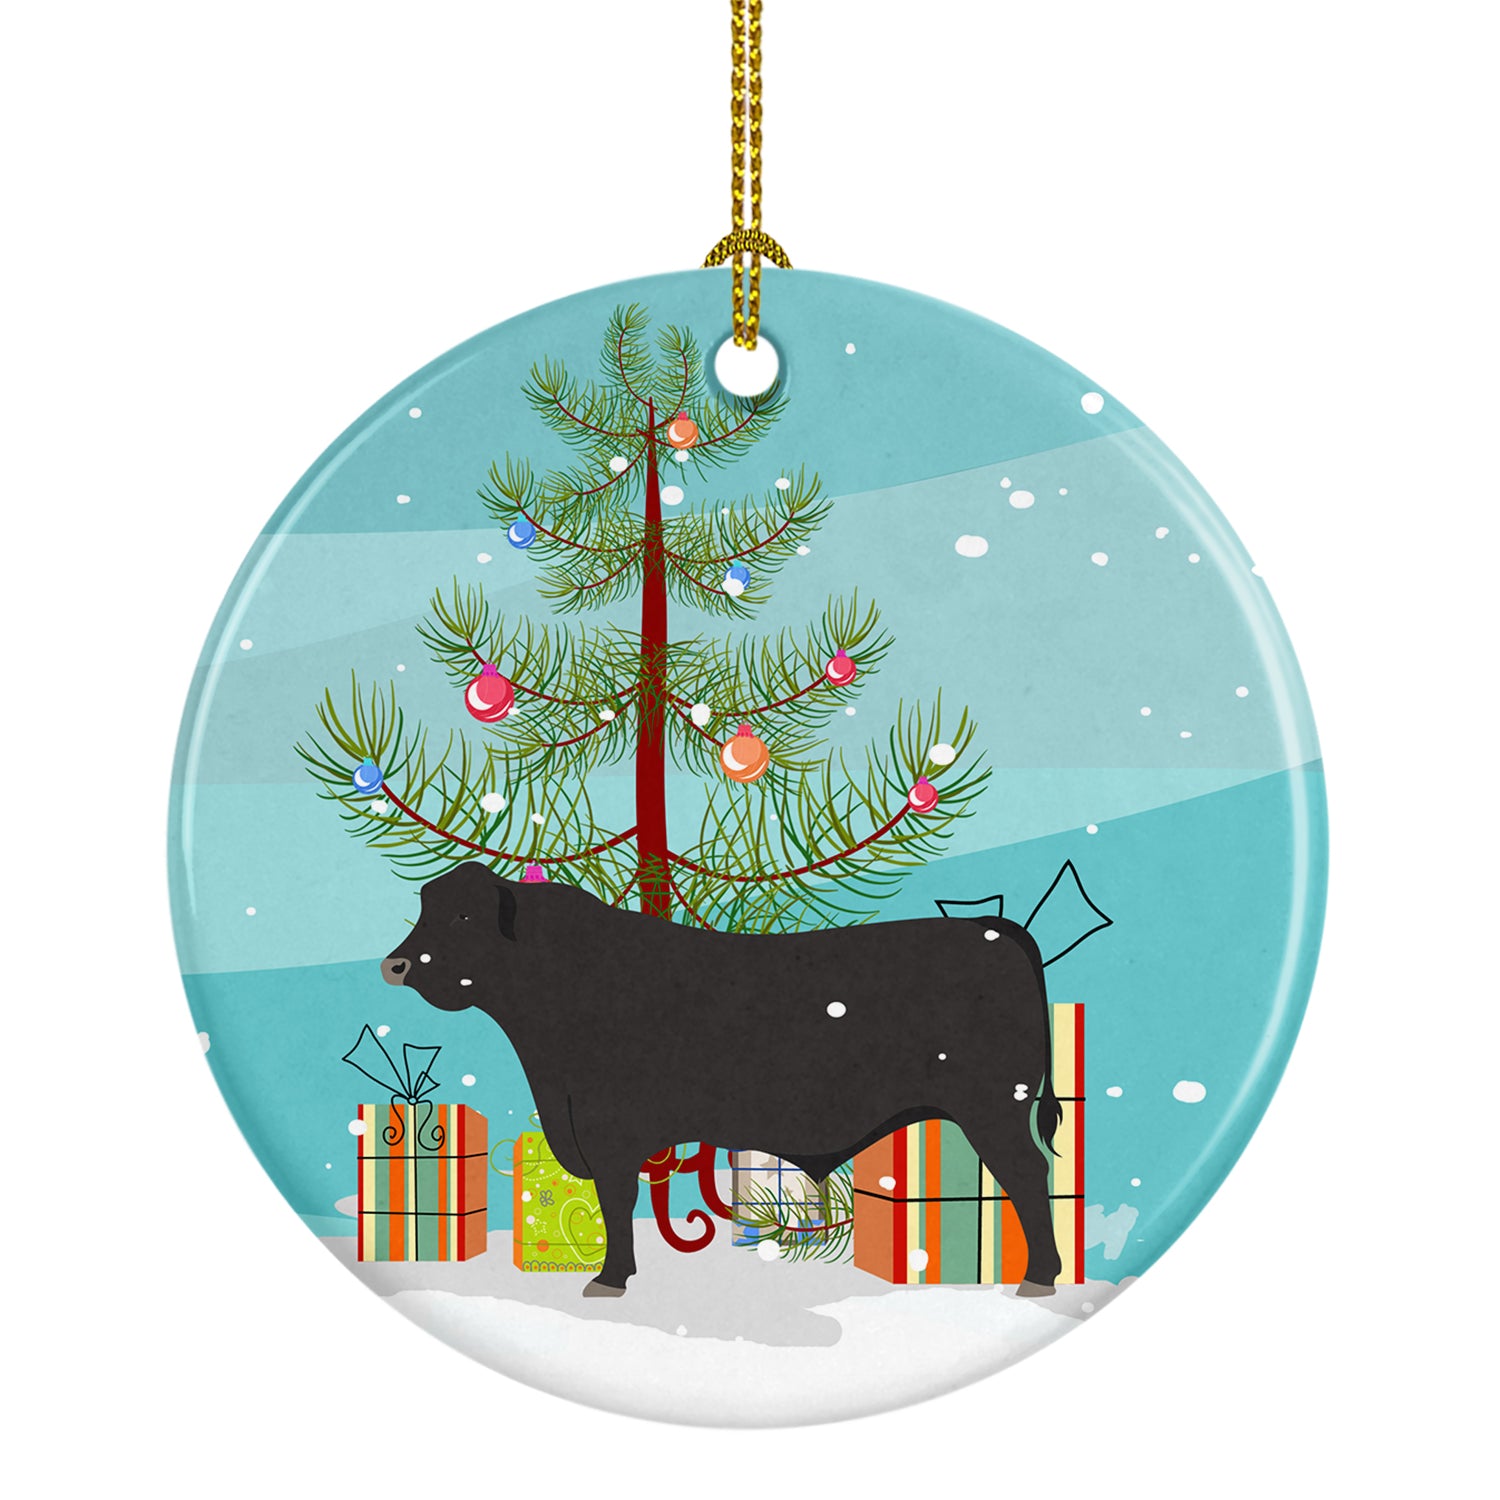 Black Angus Cow Christmas Ceramic Ornament BB9195CO1 - the-store.com